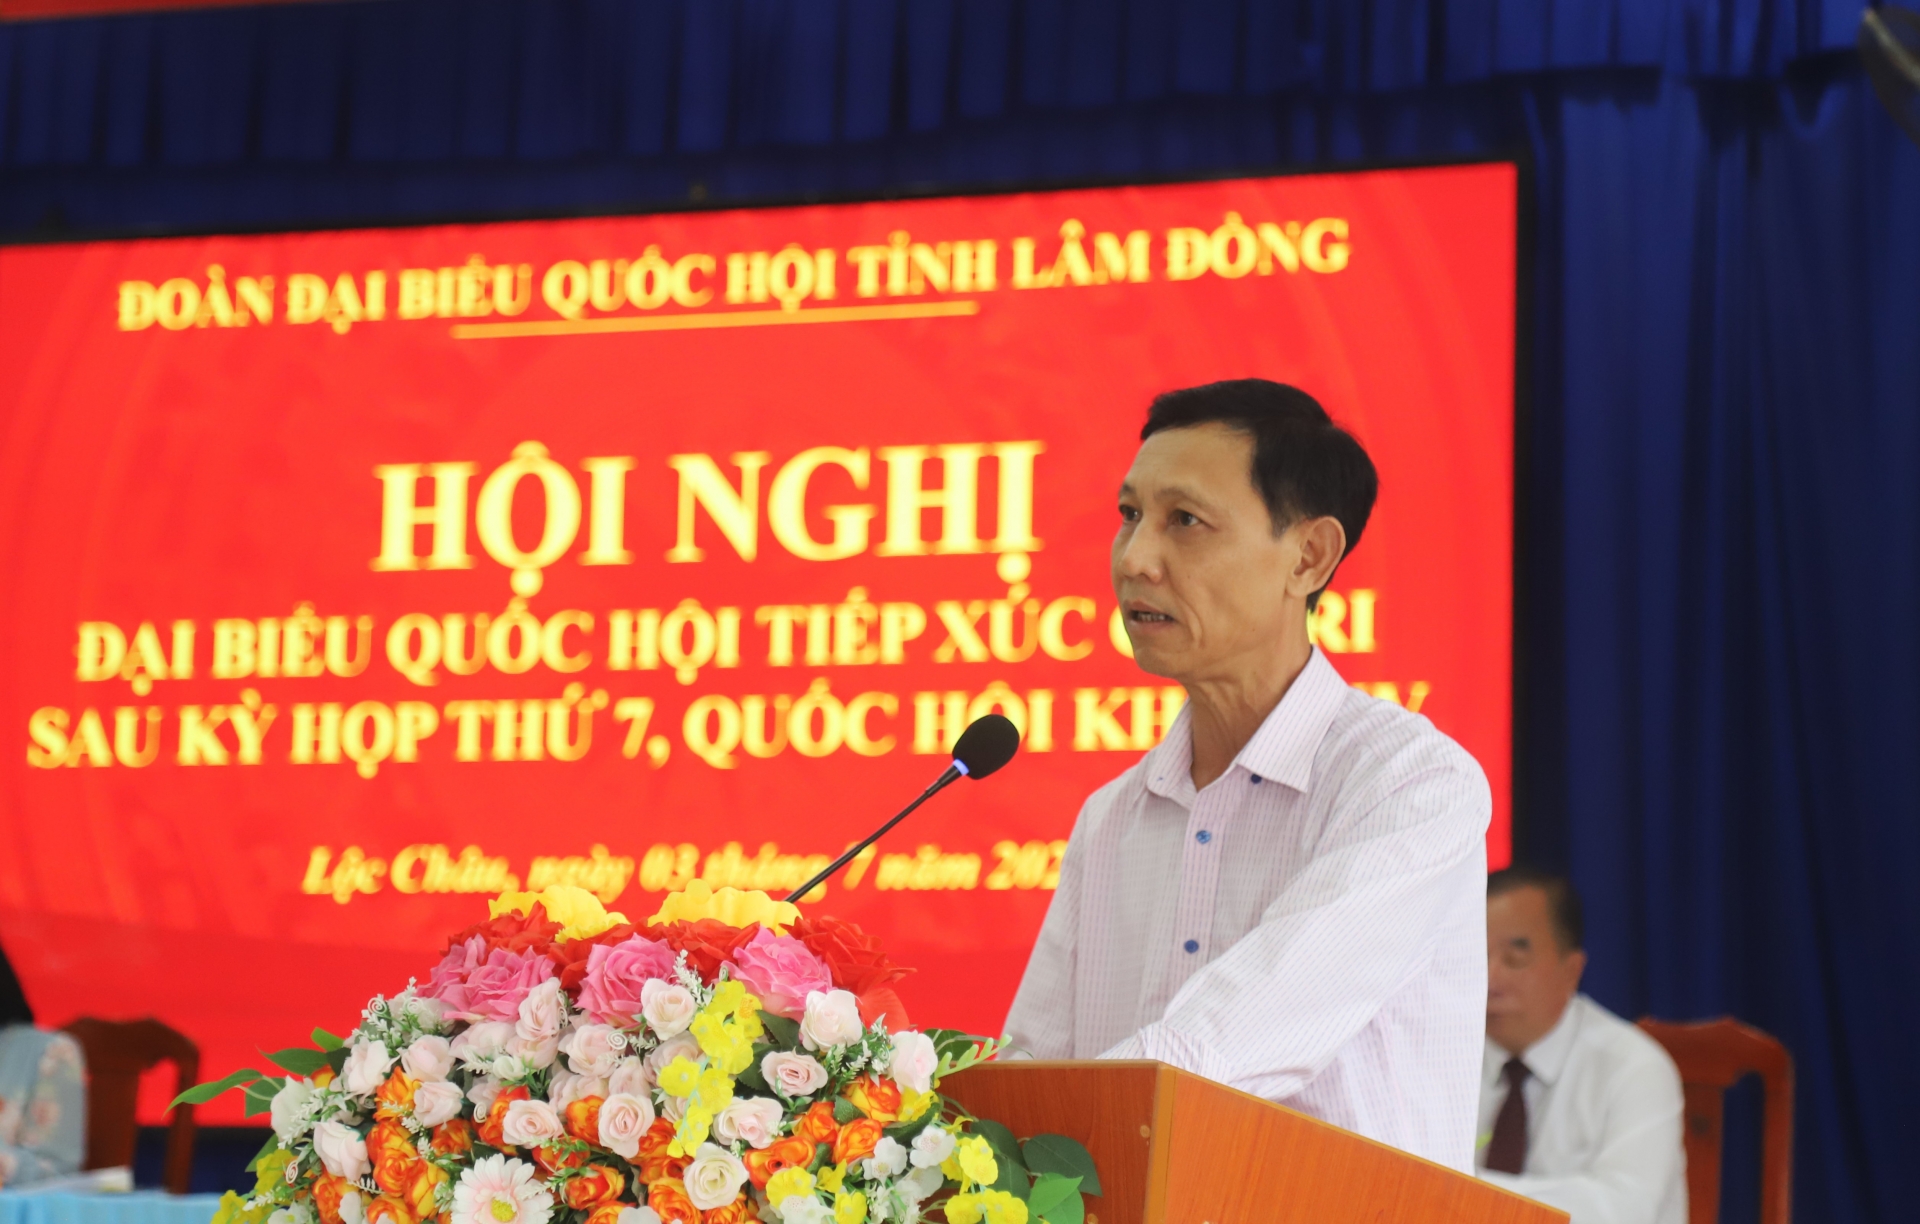 Ông Vũ Văn Vân - Chủ tịch UBND xã Lộc Châu tiếp thu, giải trình kiến nghị của cử tri thuộc thẩm quyền